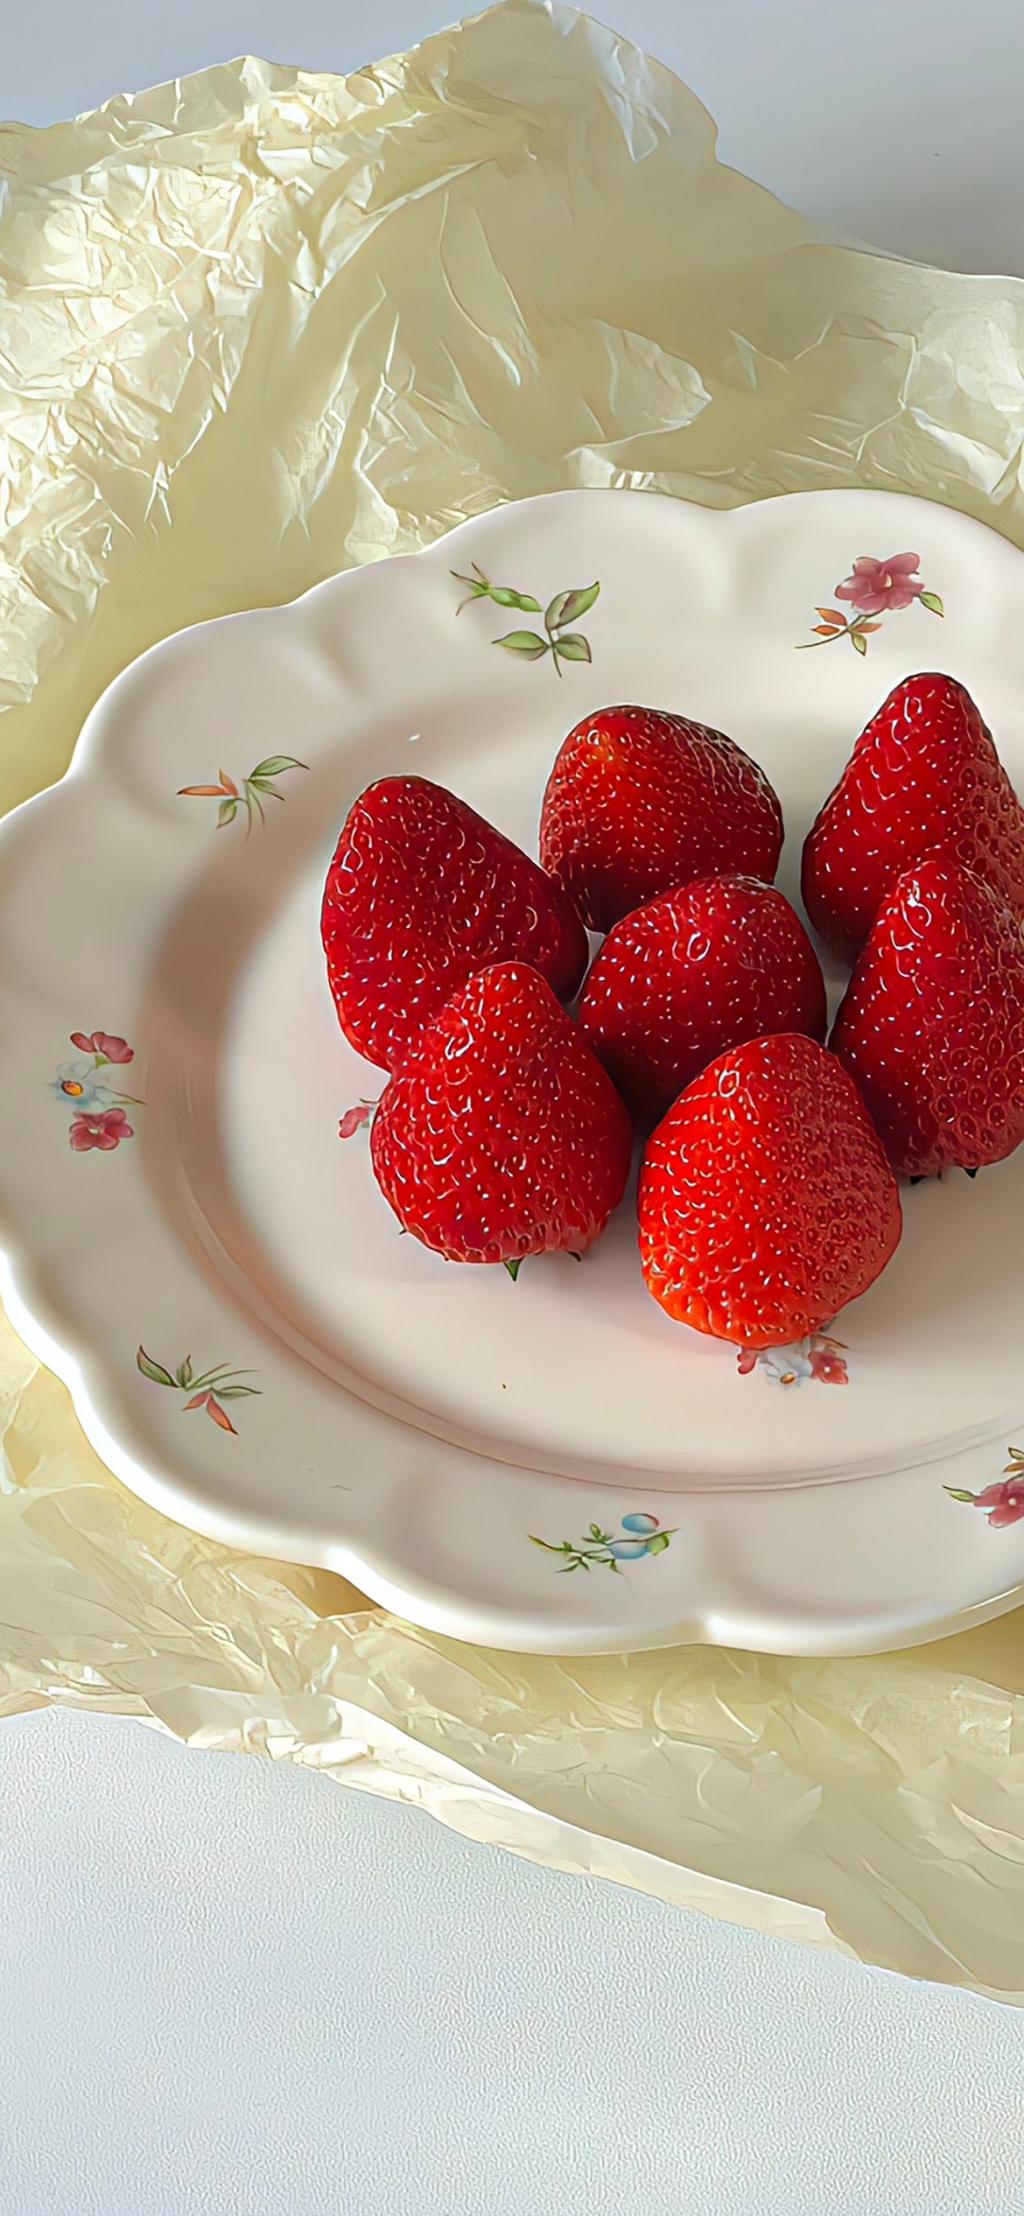 水润可口的草莓